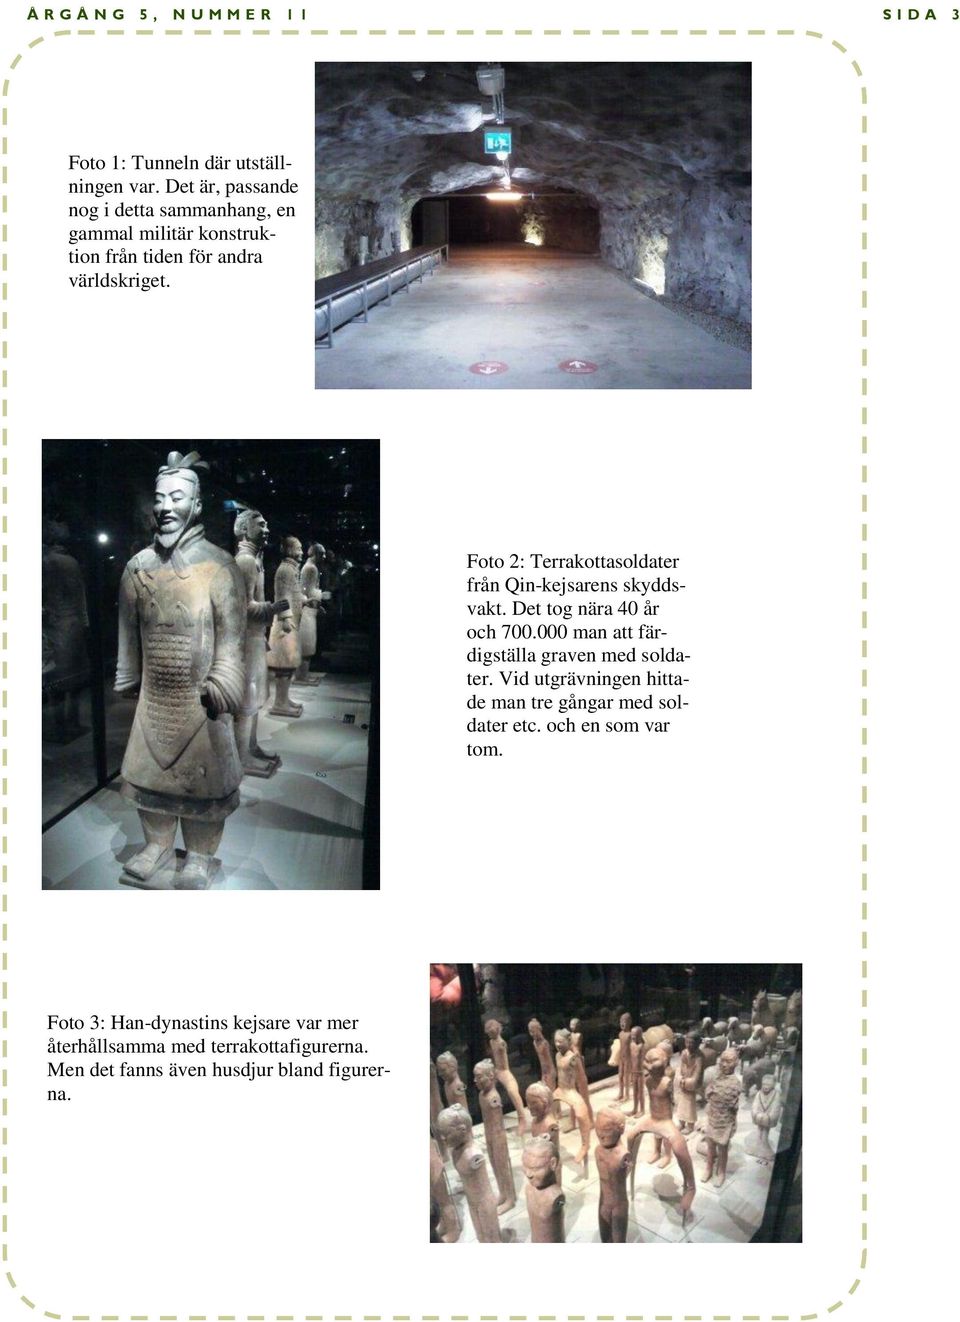 Foto 2: Terrakottasoldater från Qin-kejsarens skyddsvakt. Det tog nära 40 år och 700.